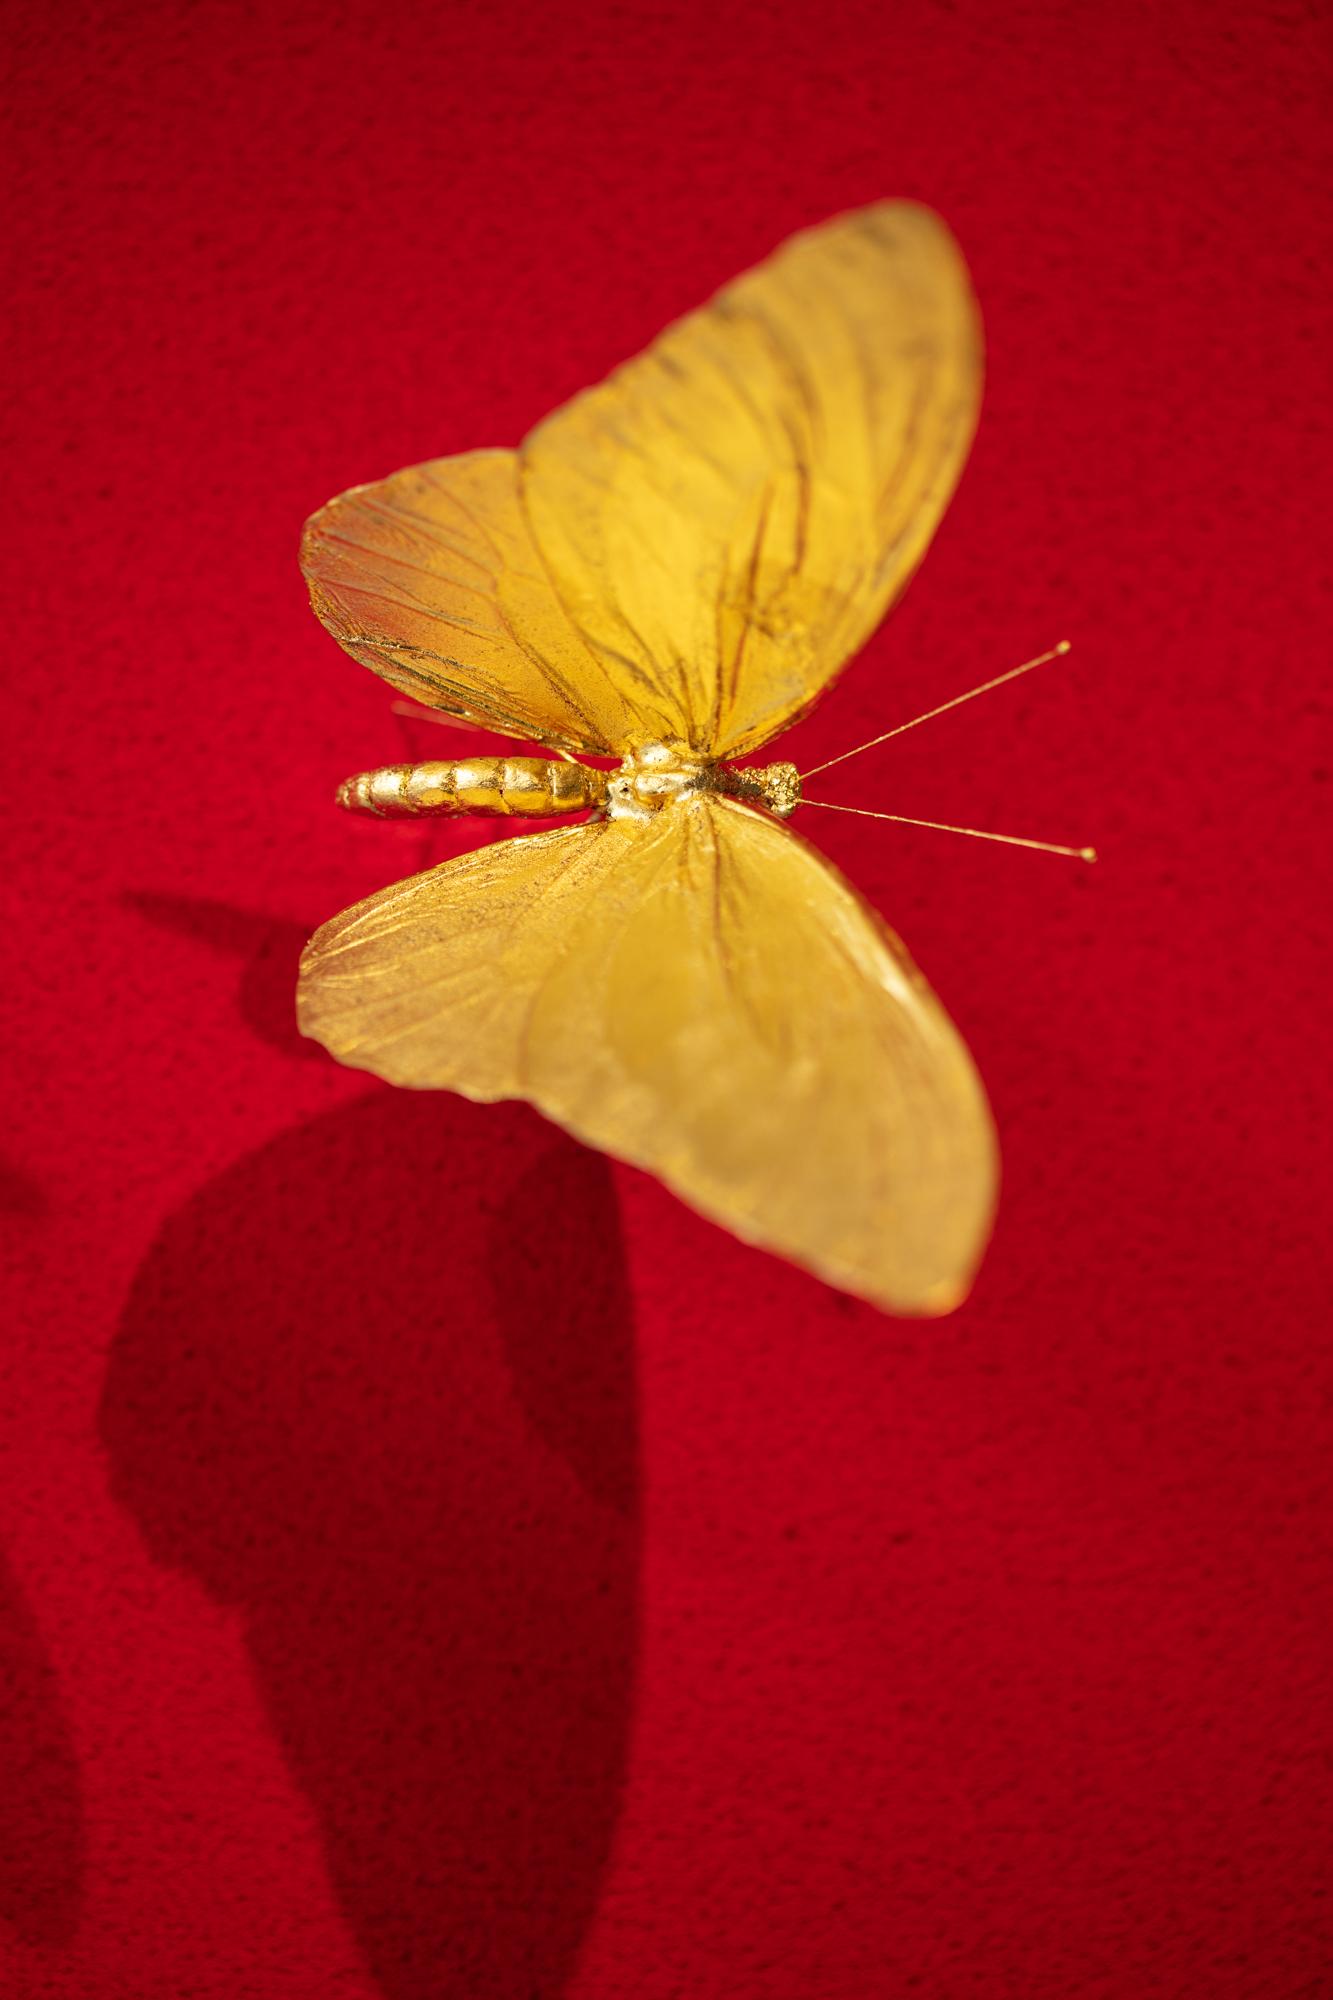 Metamorphosis Red II - 21st Century, Contemporary Figurative, Golden Butterflies 6